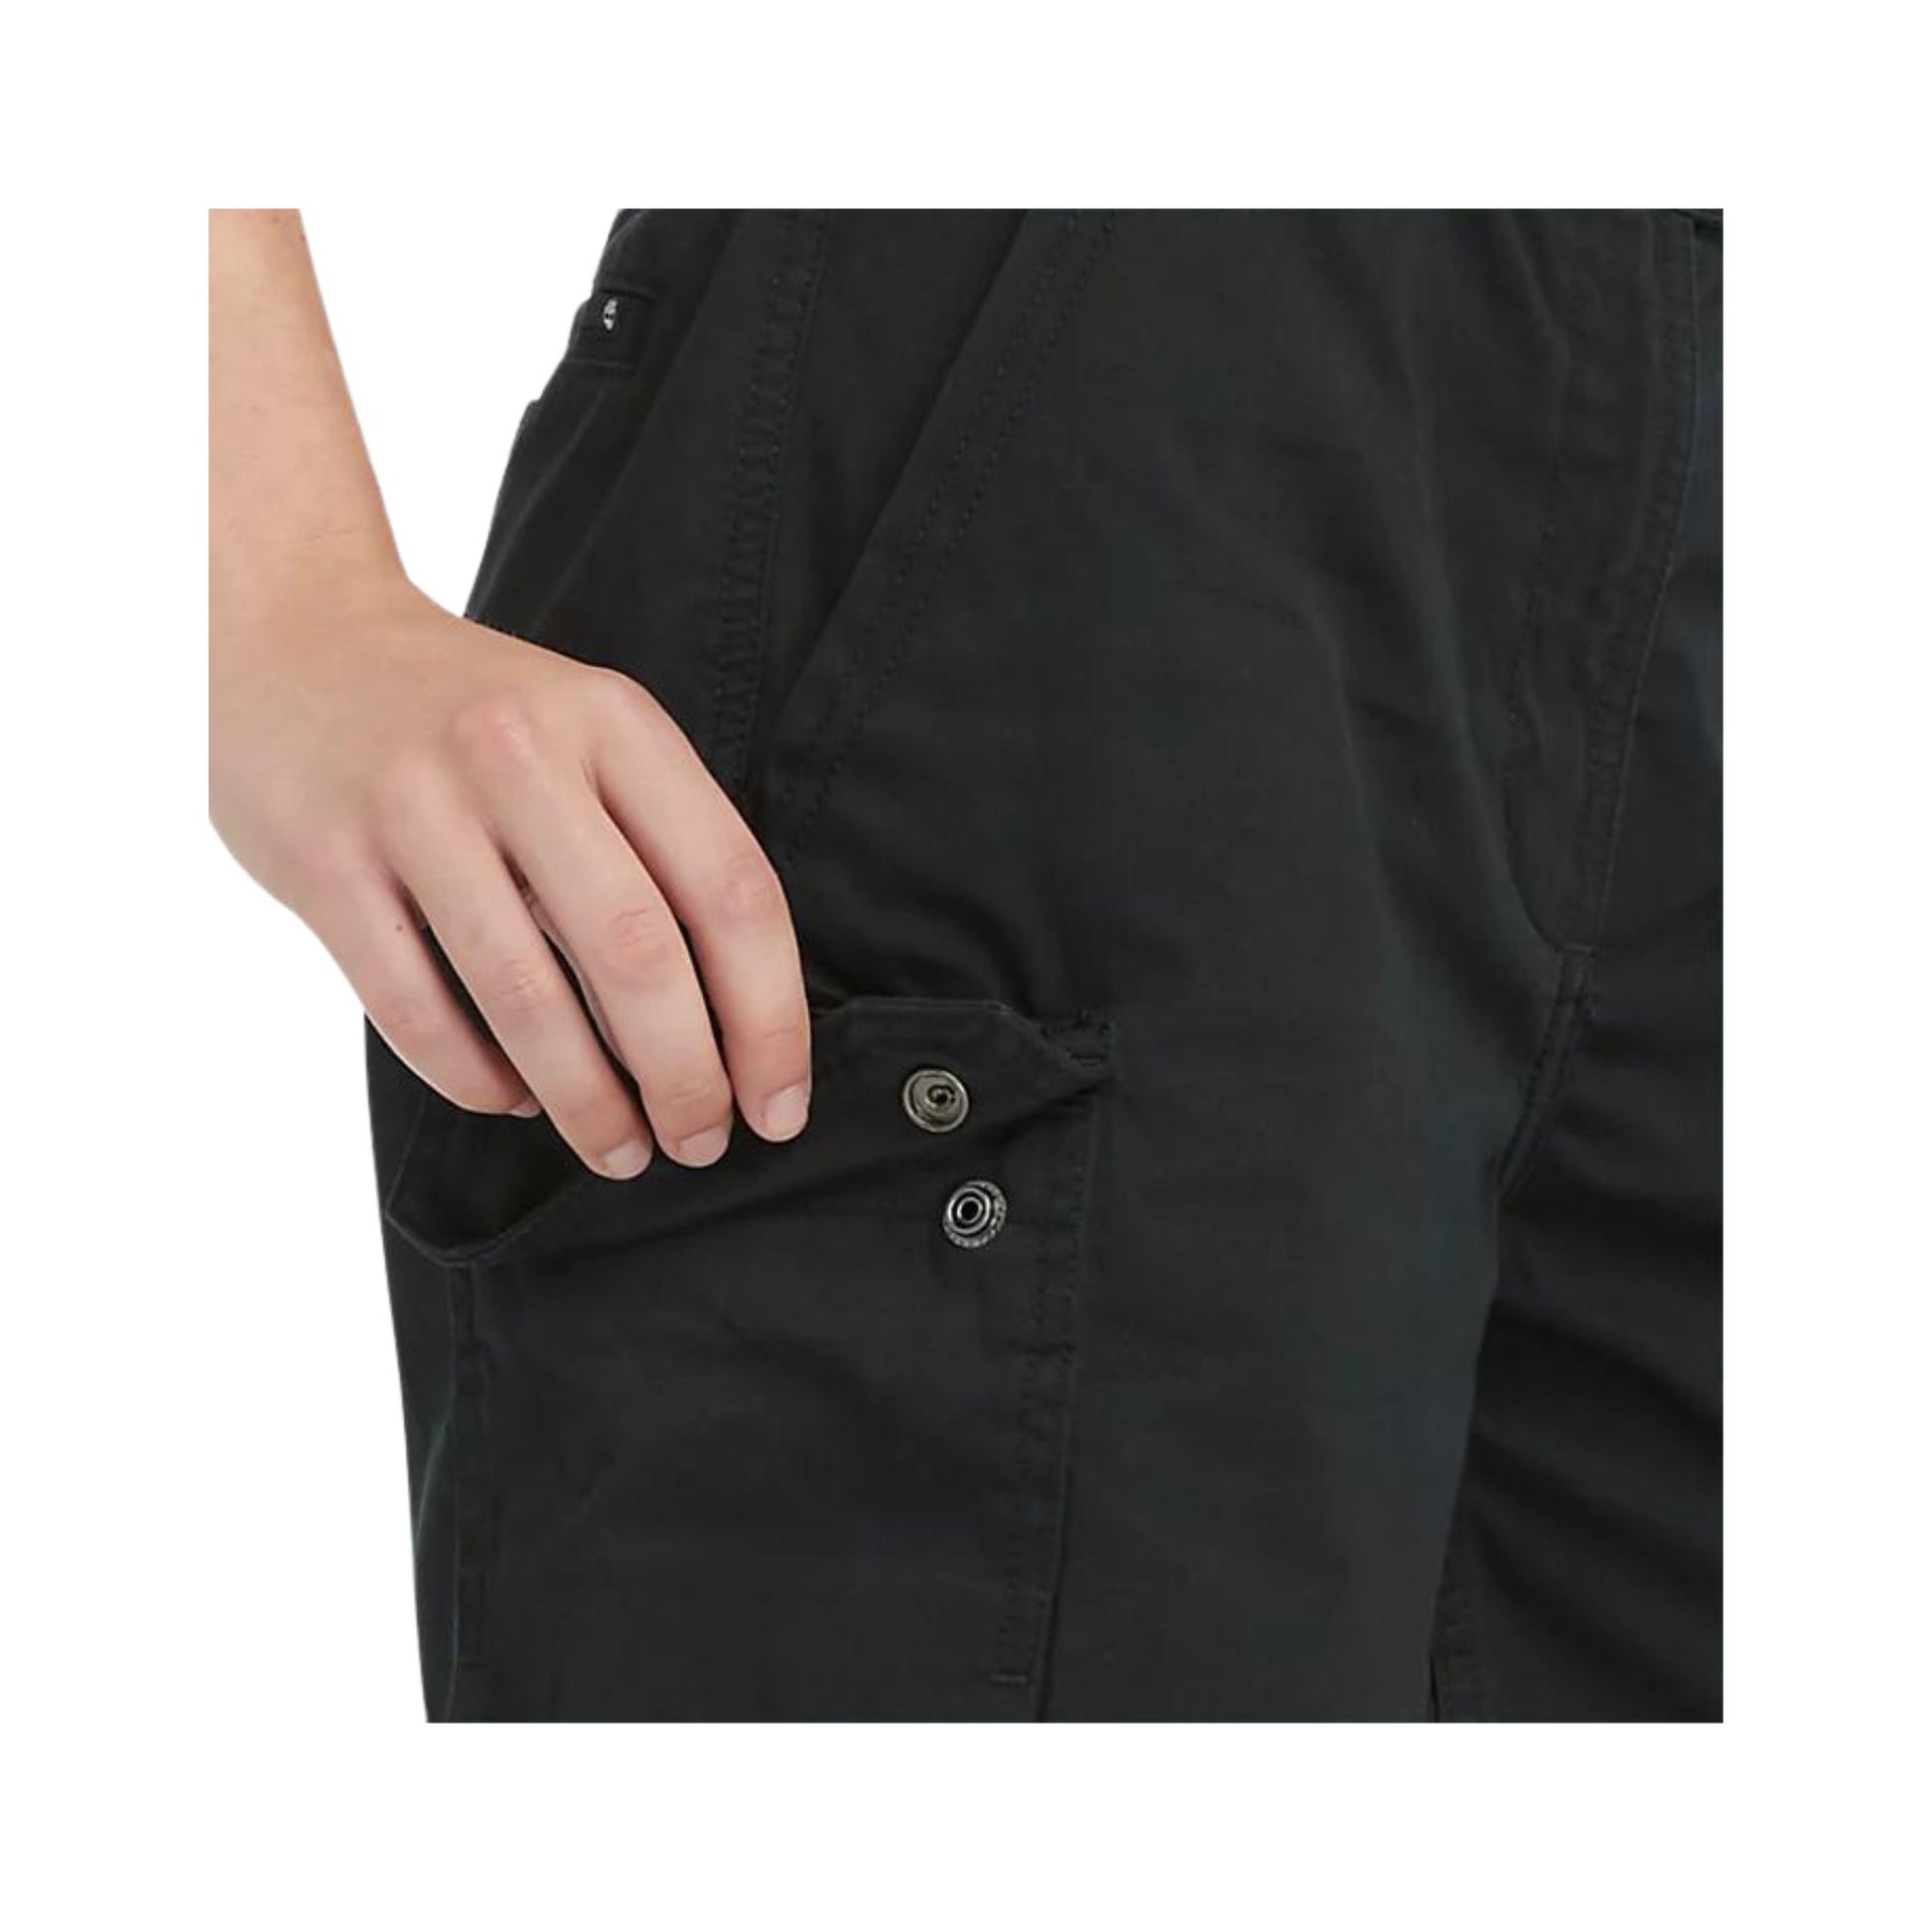 Dettaglio ravvicinato tasca con bottone automatico colore Nero